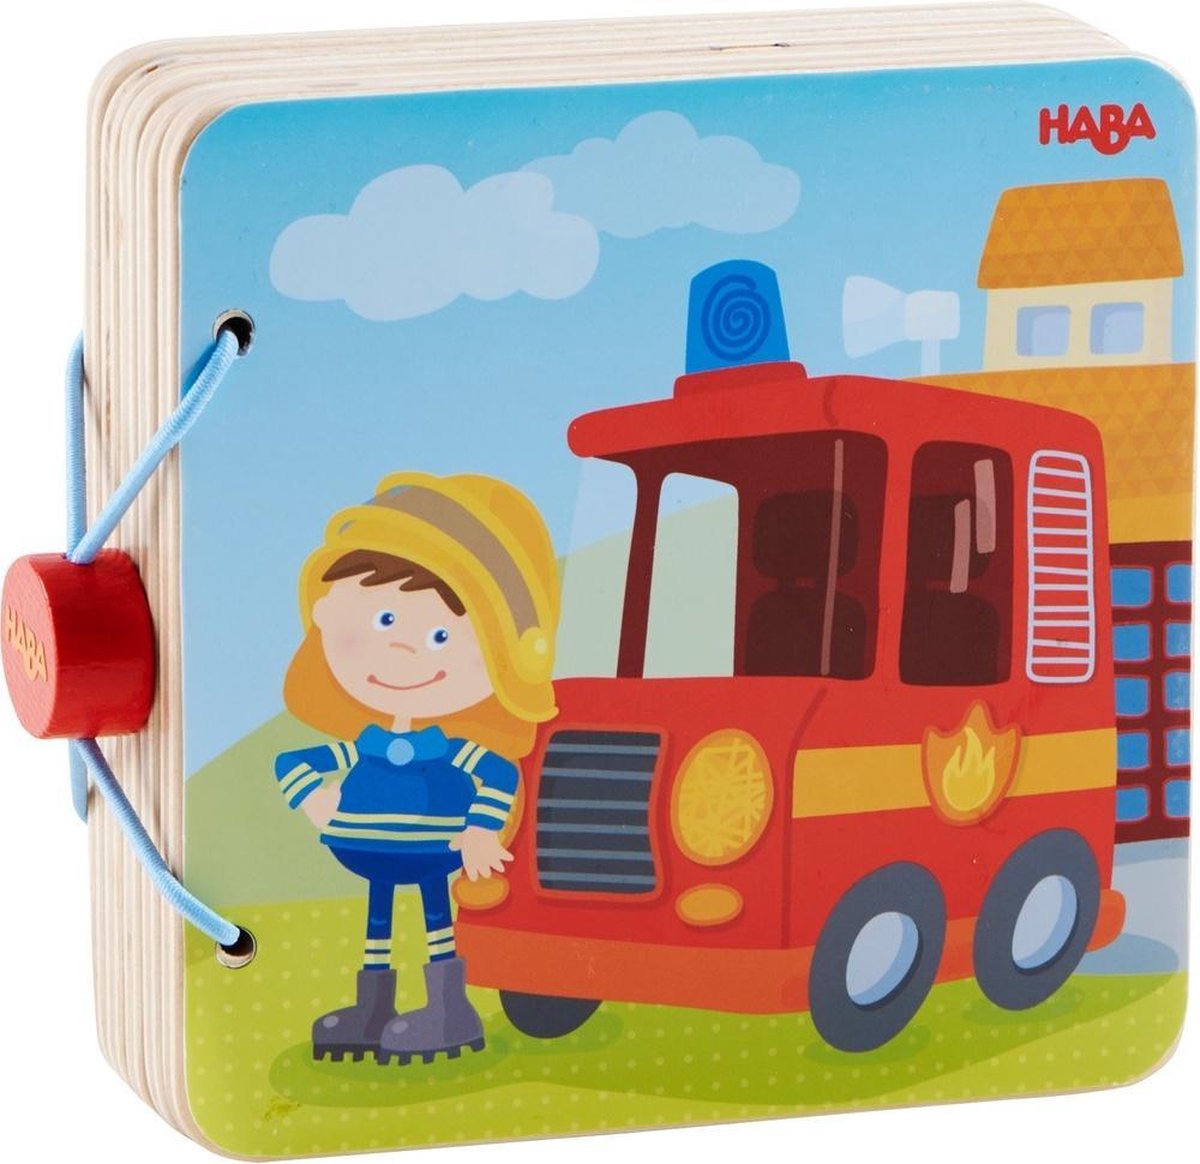 HABA Houten babyboek Brandweer